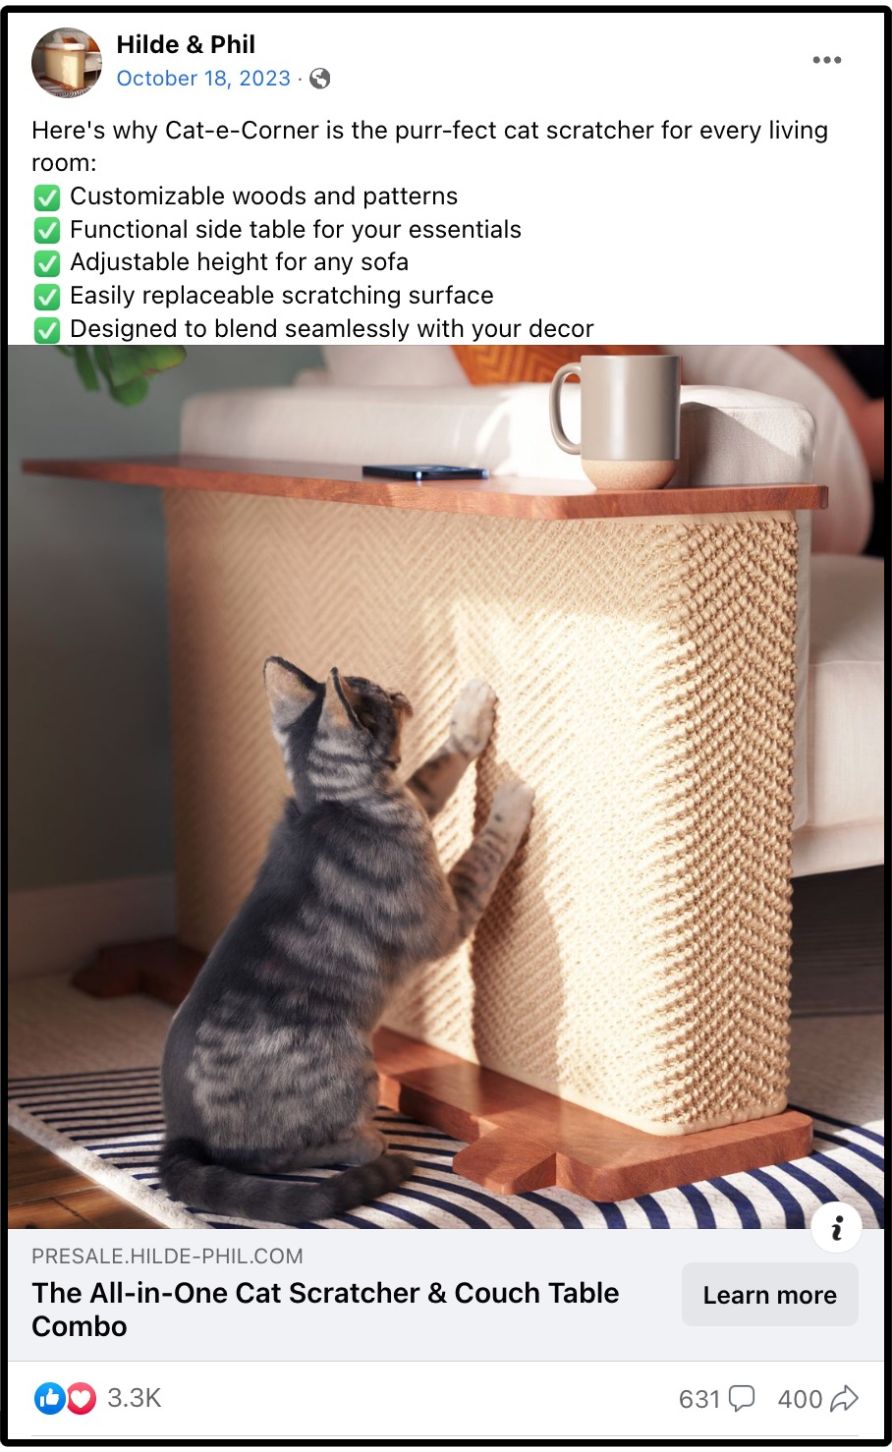 cat-e-corner facebook ad